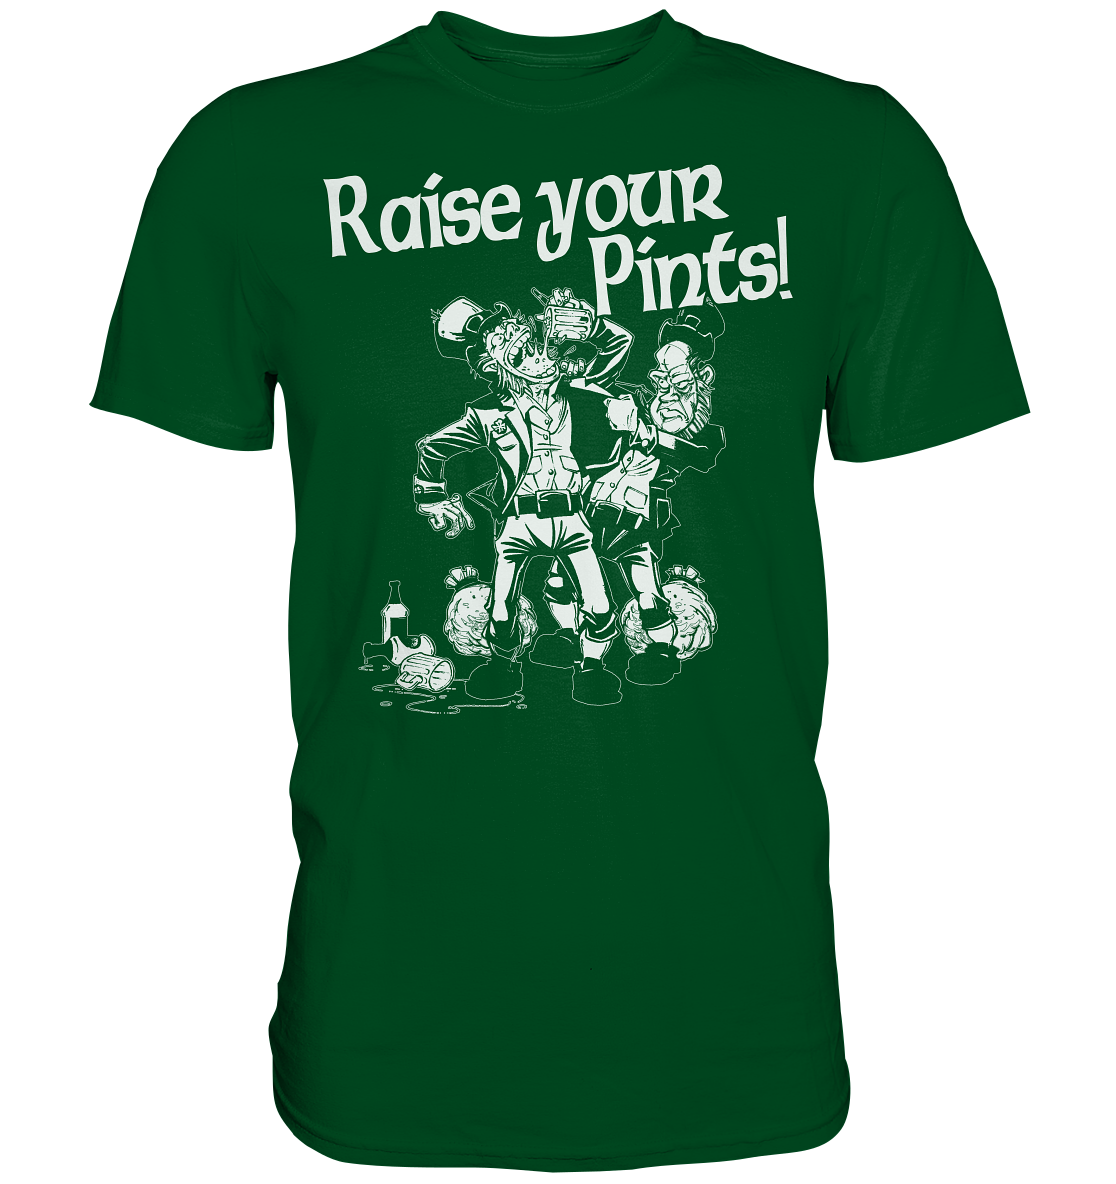 Raise Your Pints "Leprechauns" - Premium Shirt